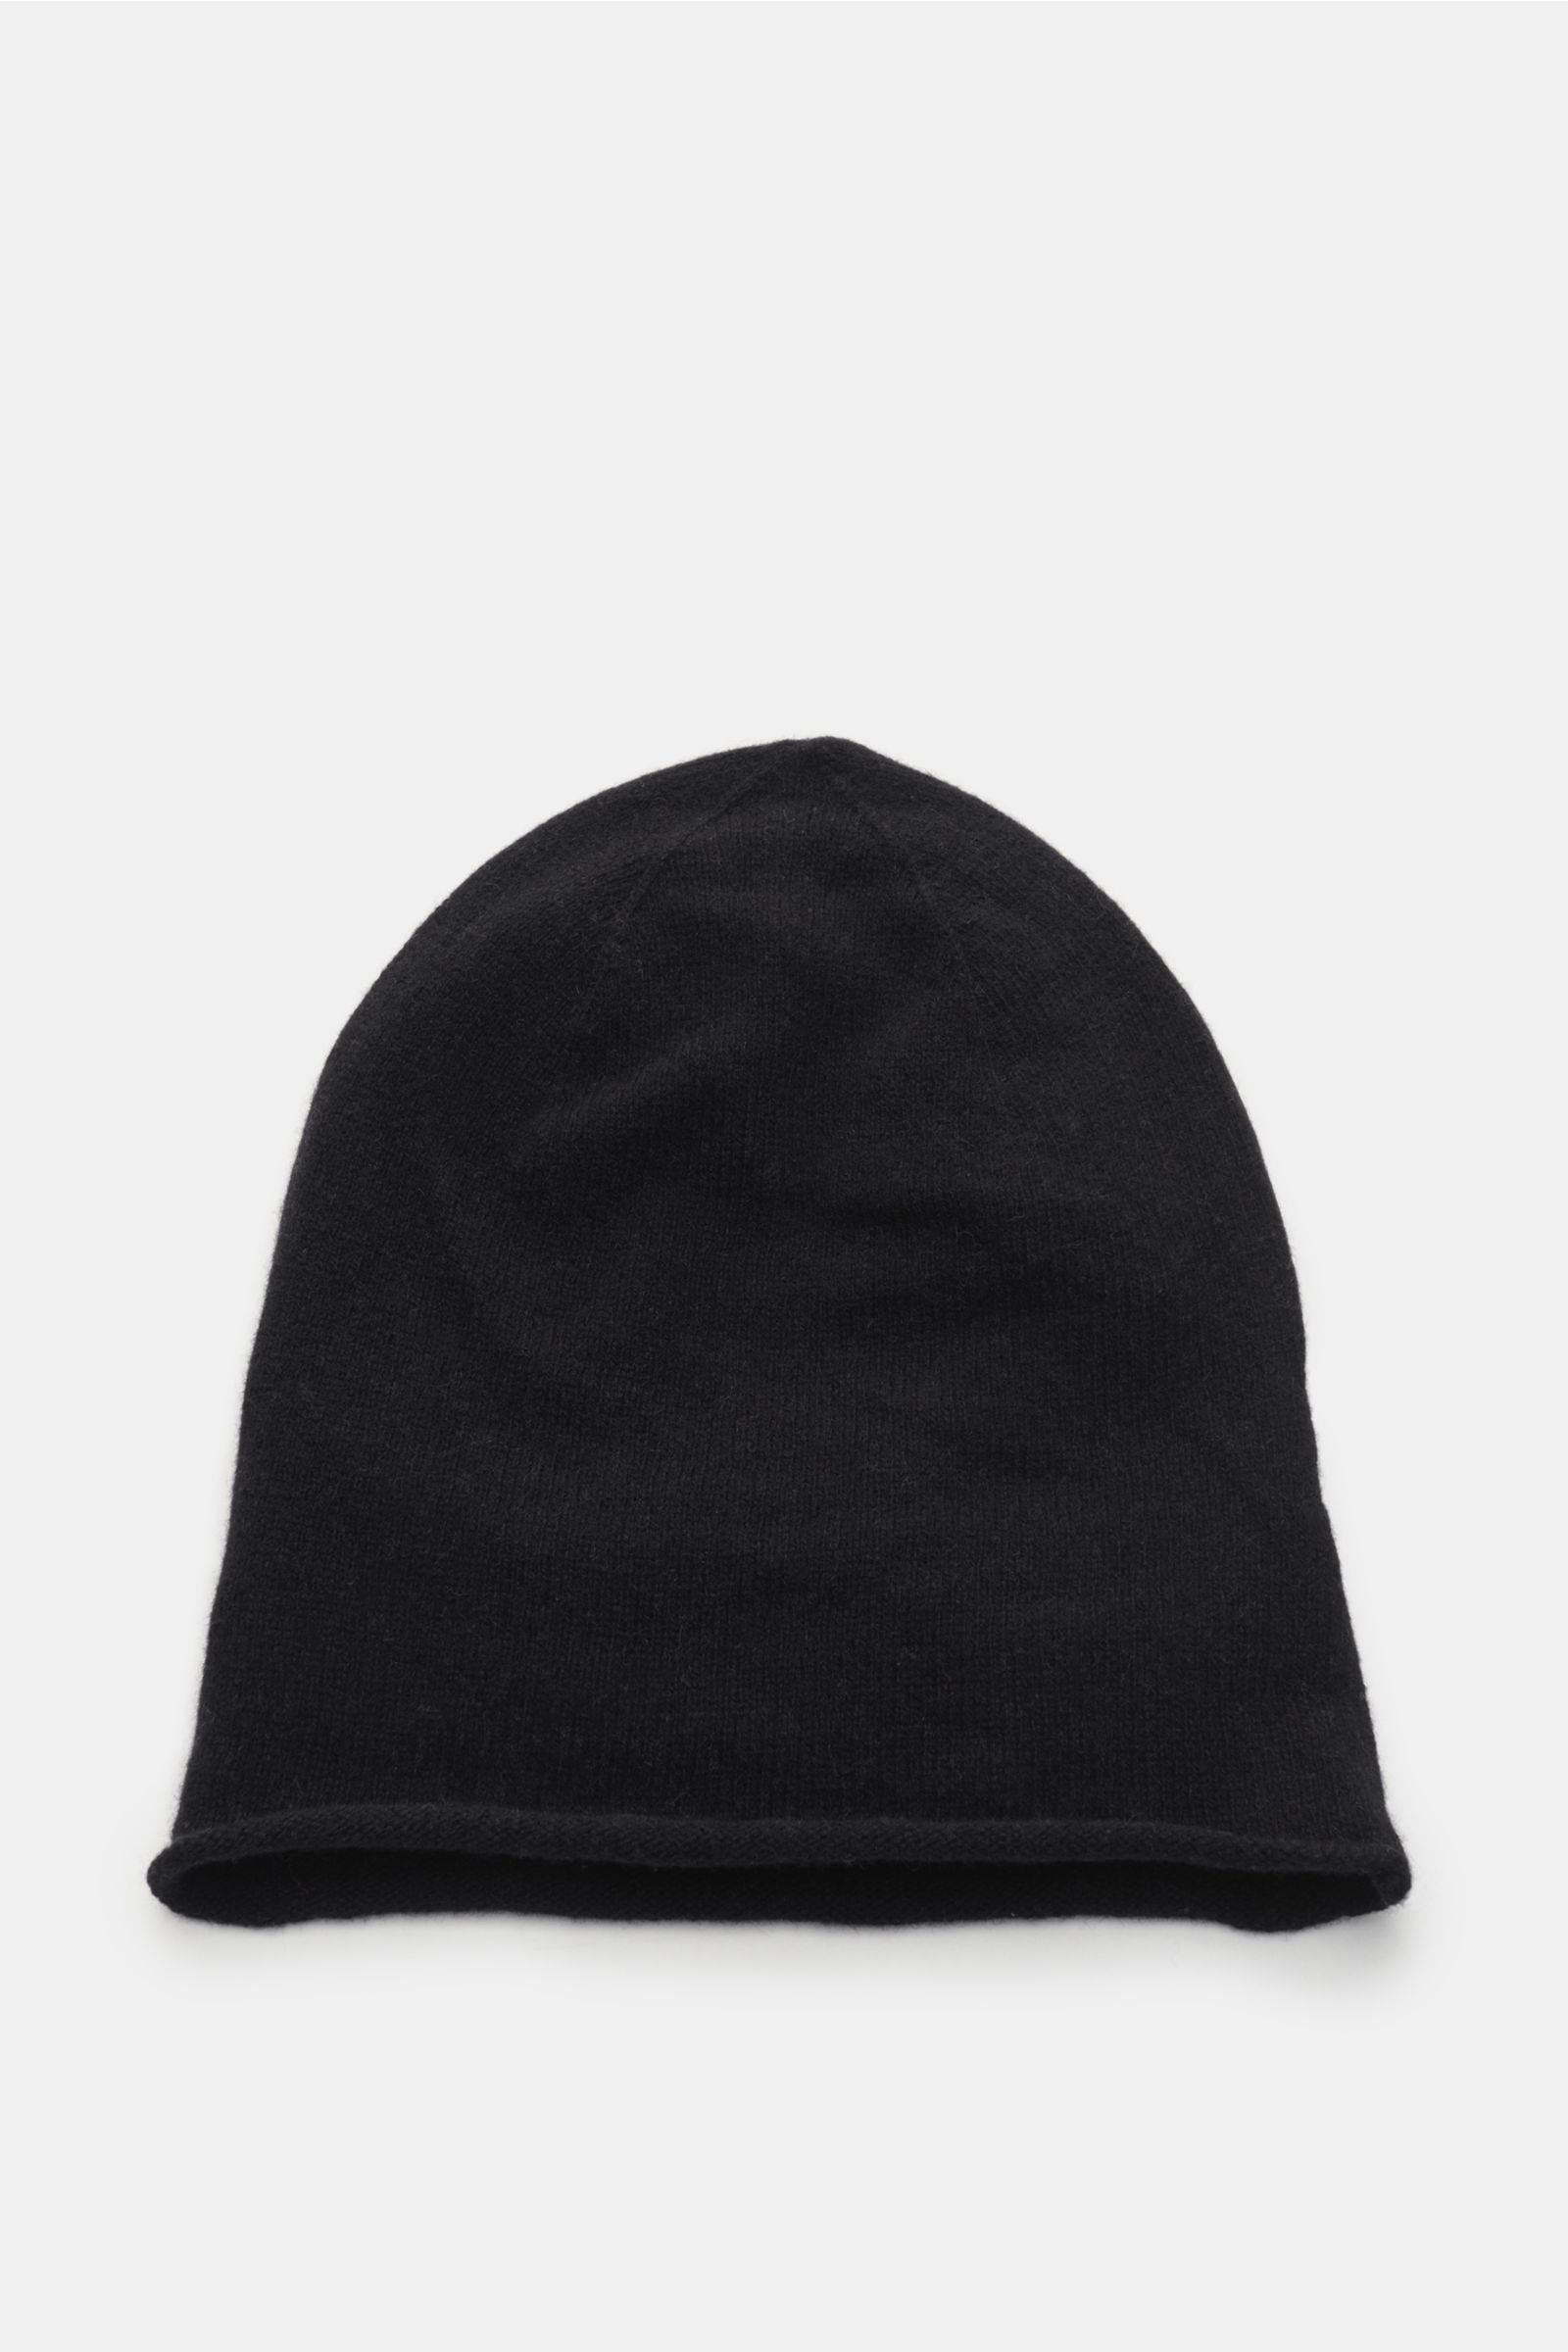 Cashmere Mütze schwarz